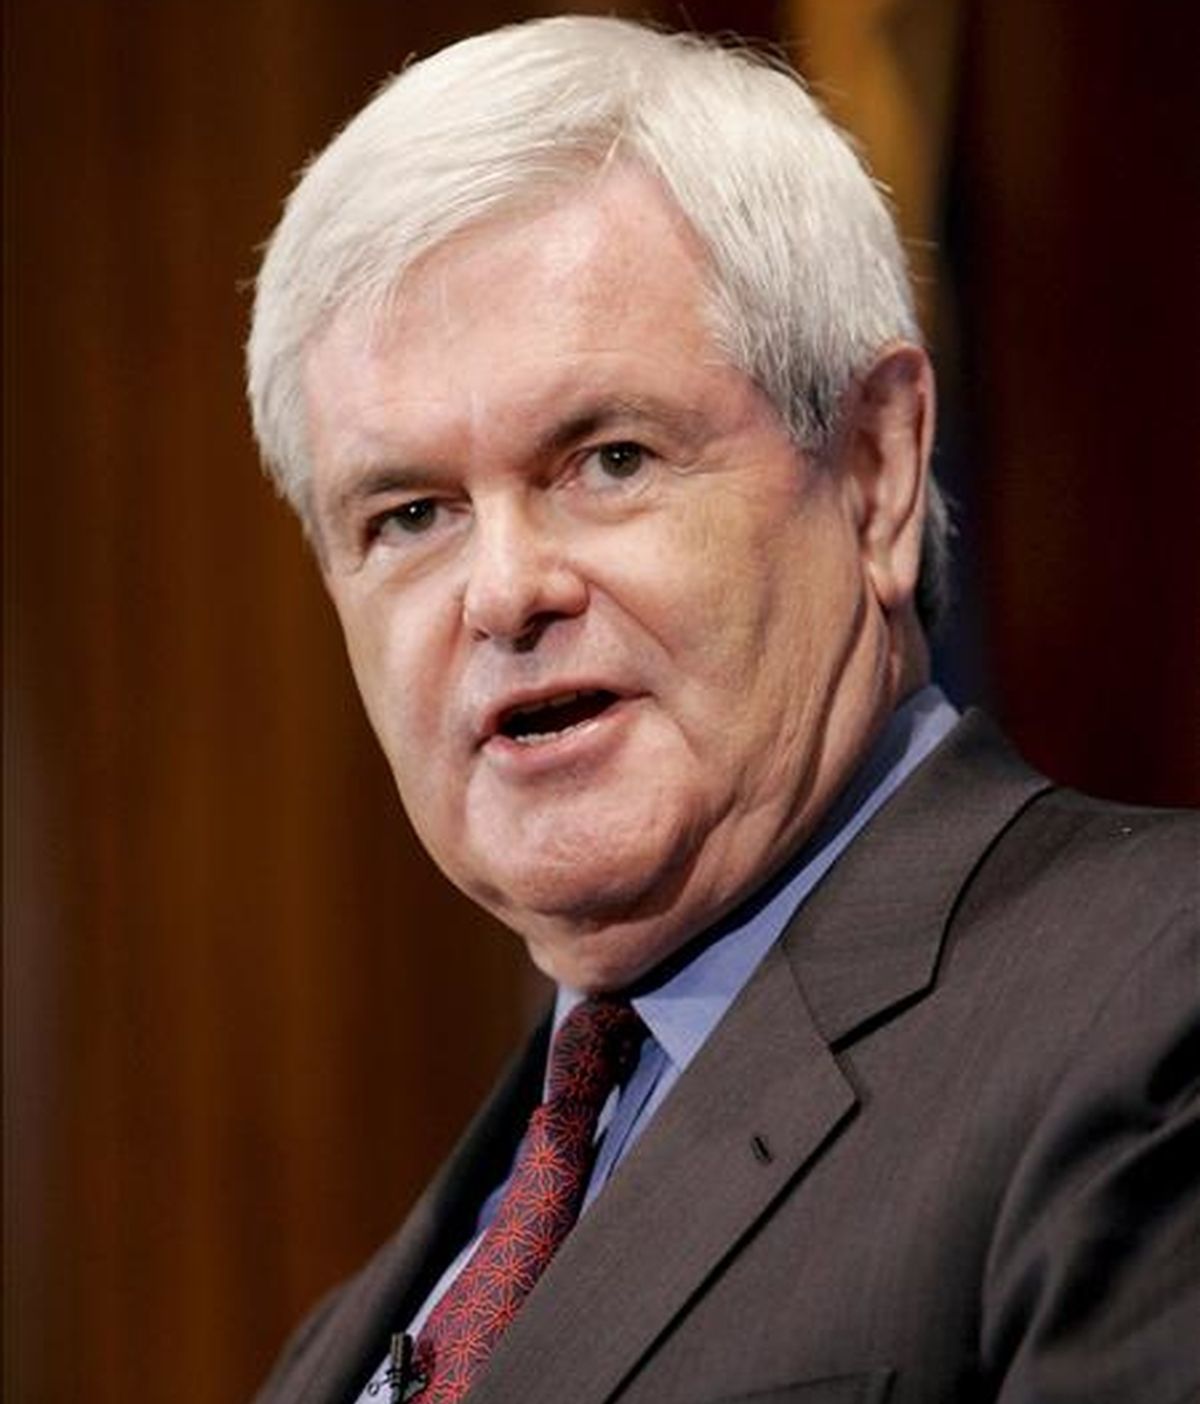 Las palabras de Gingrich han sentado mal entre algunos republicanos, en unos momentos en que su partido ha perdido apoyo entre las minorías. EFE/Archivo